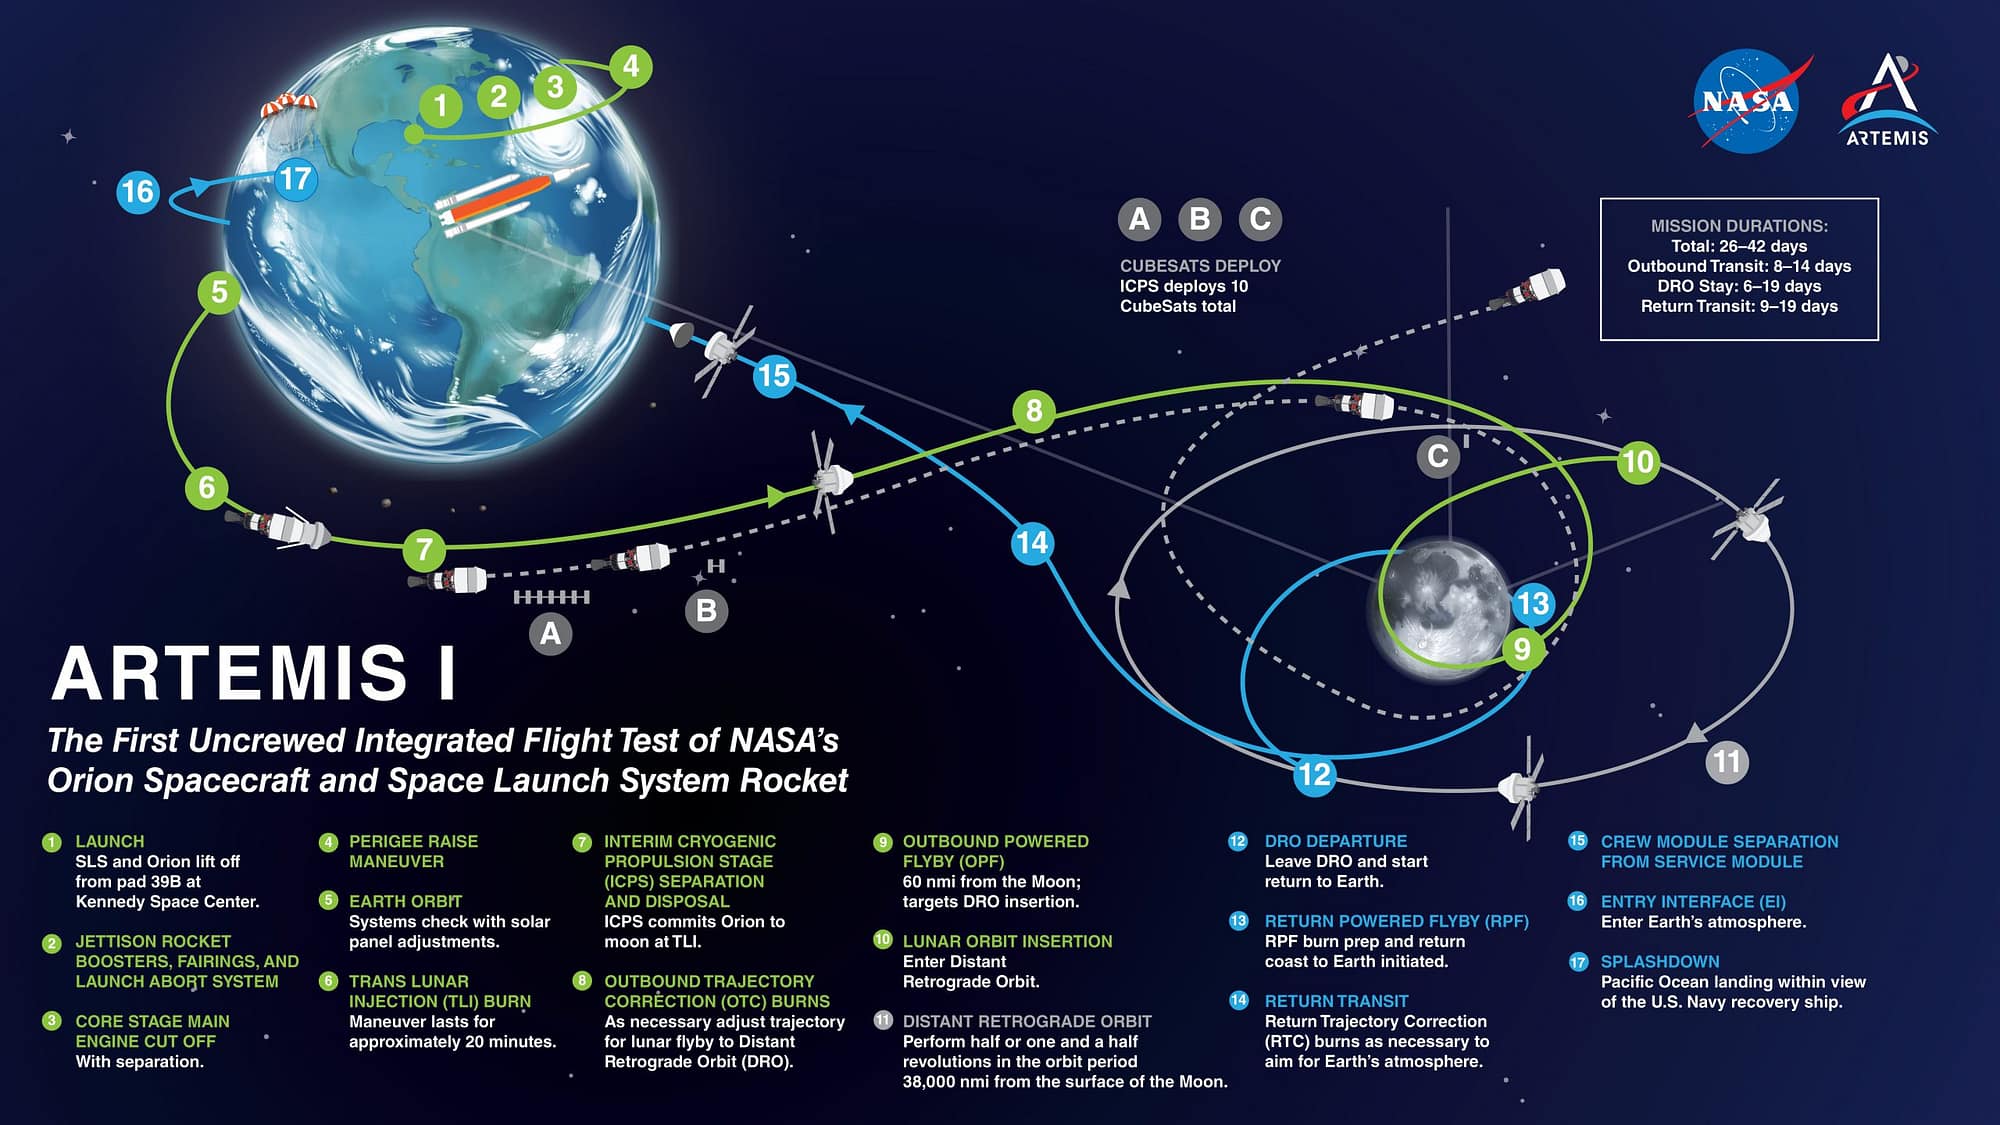 Artemis I mission timeline and flightpath